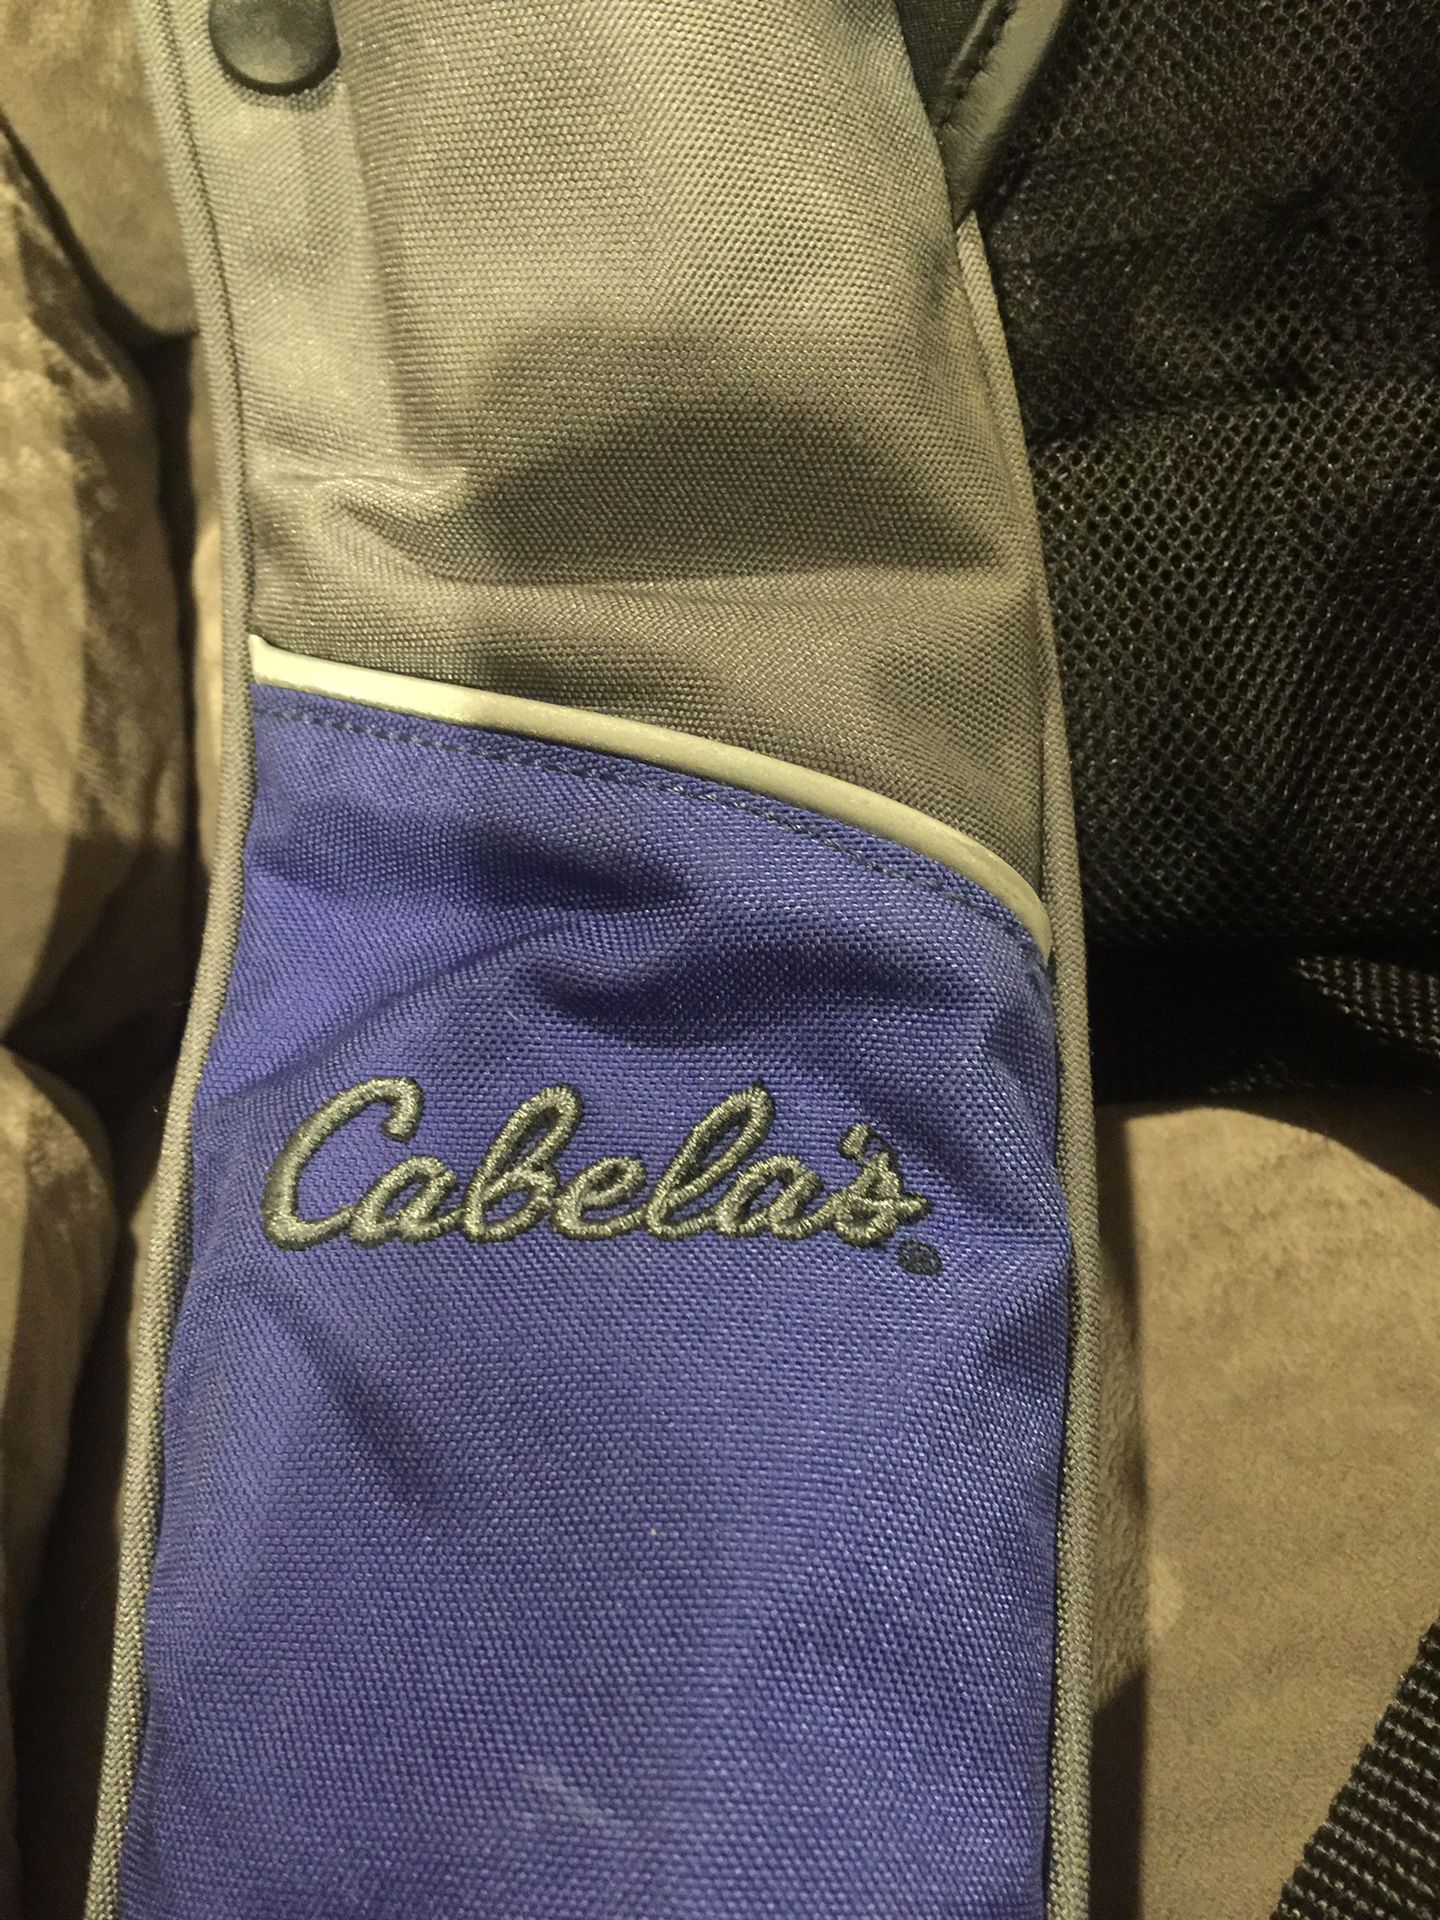 Cabela’s life jacket.